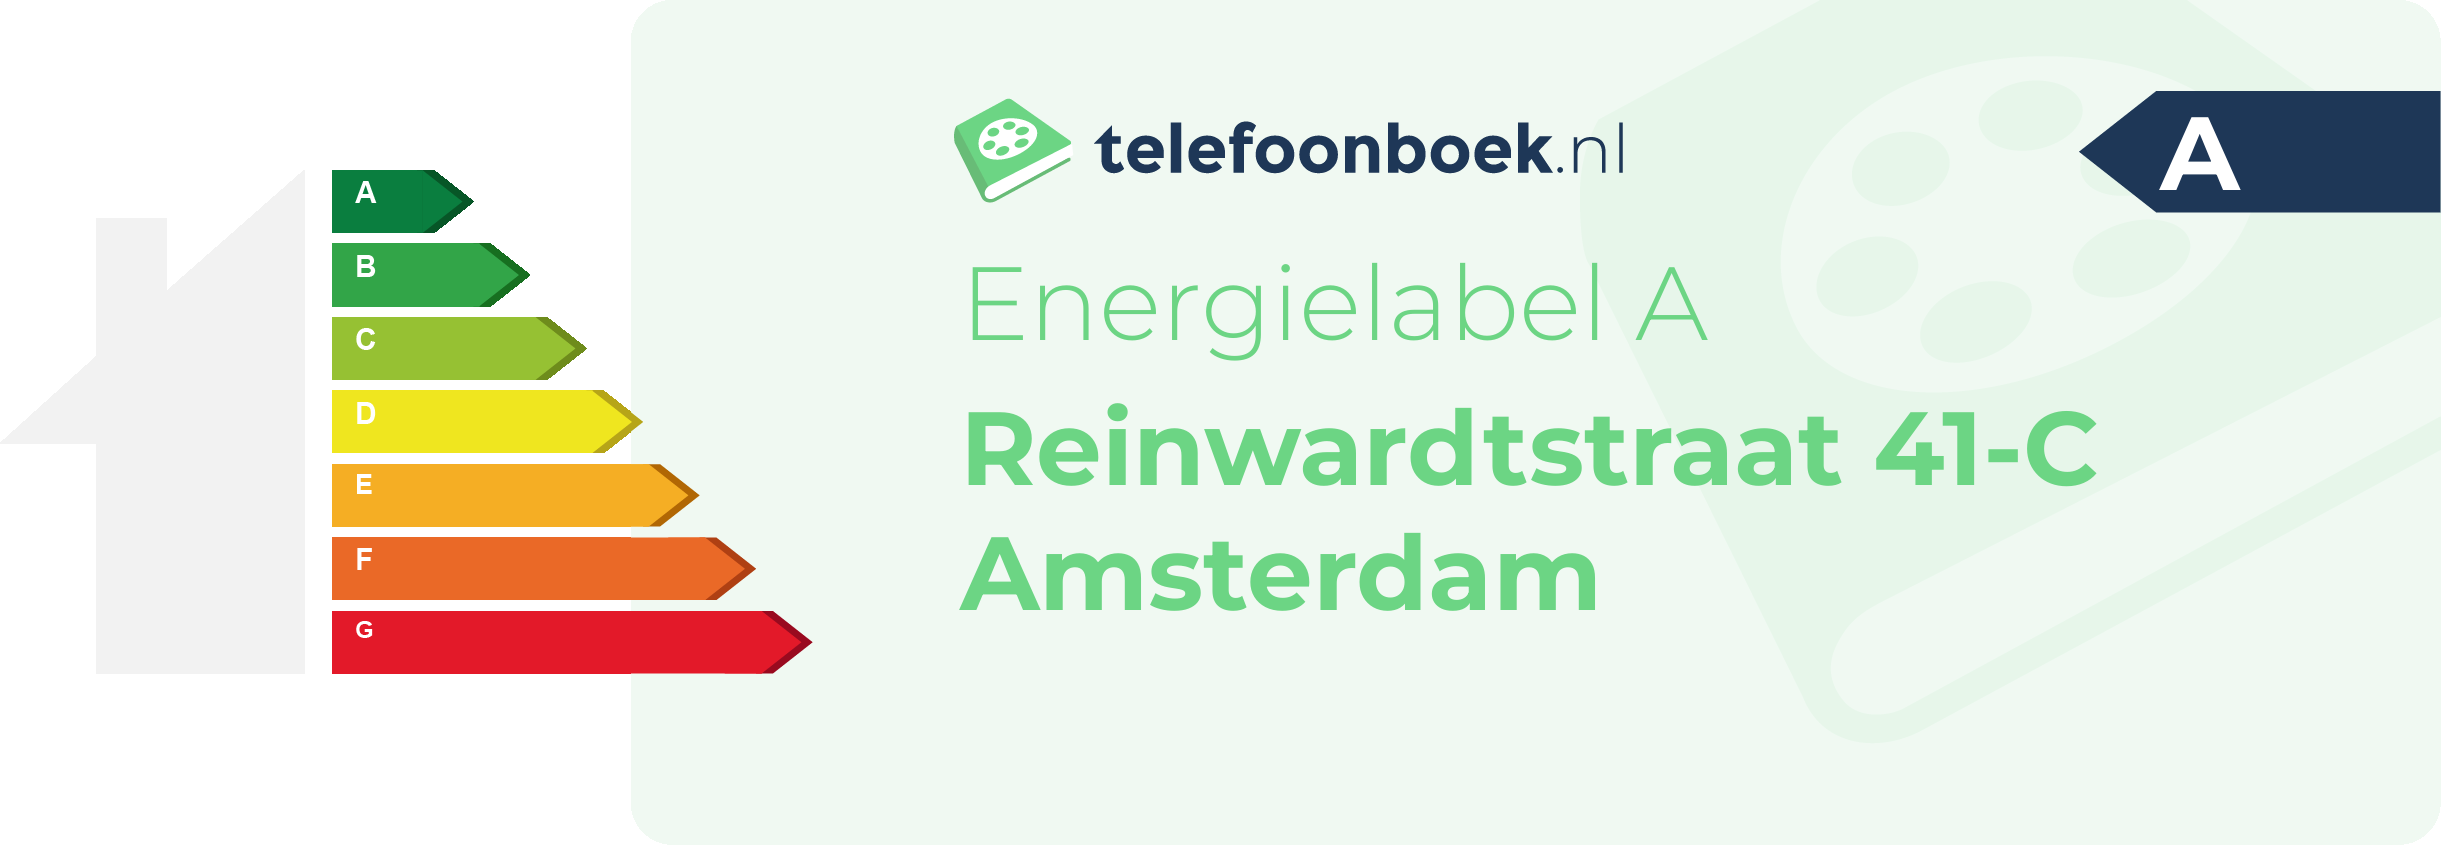 Energielabel Reinwardtstraat 41-C Amsterdam